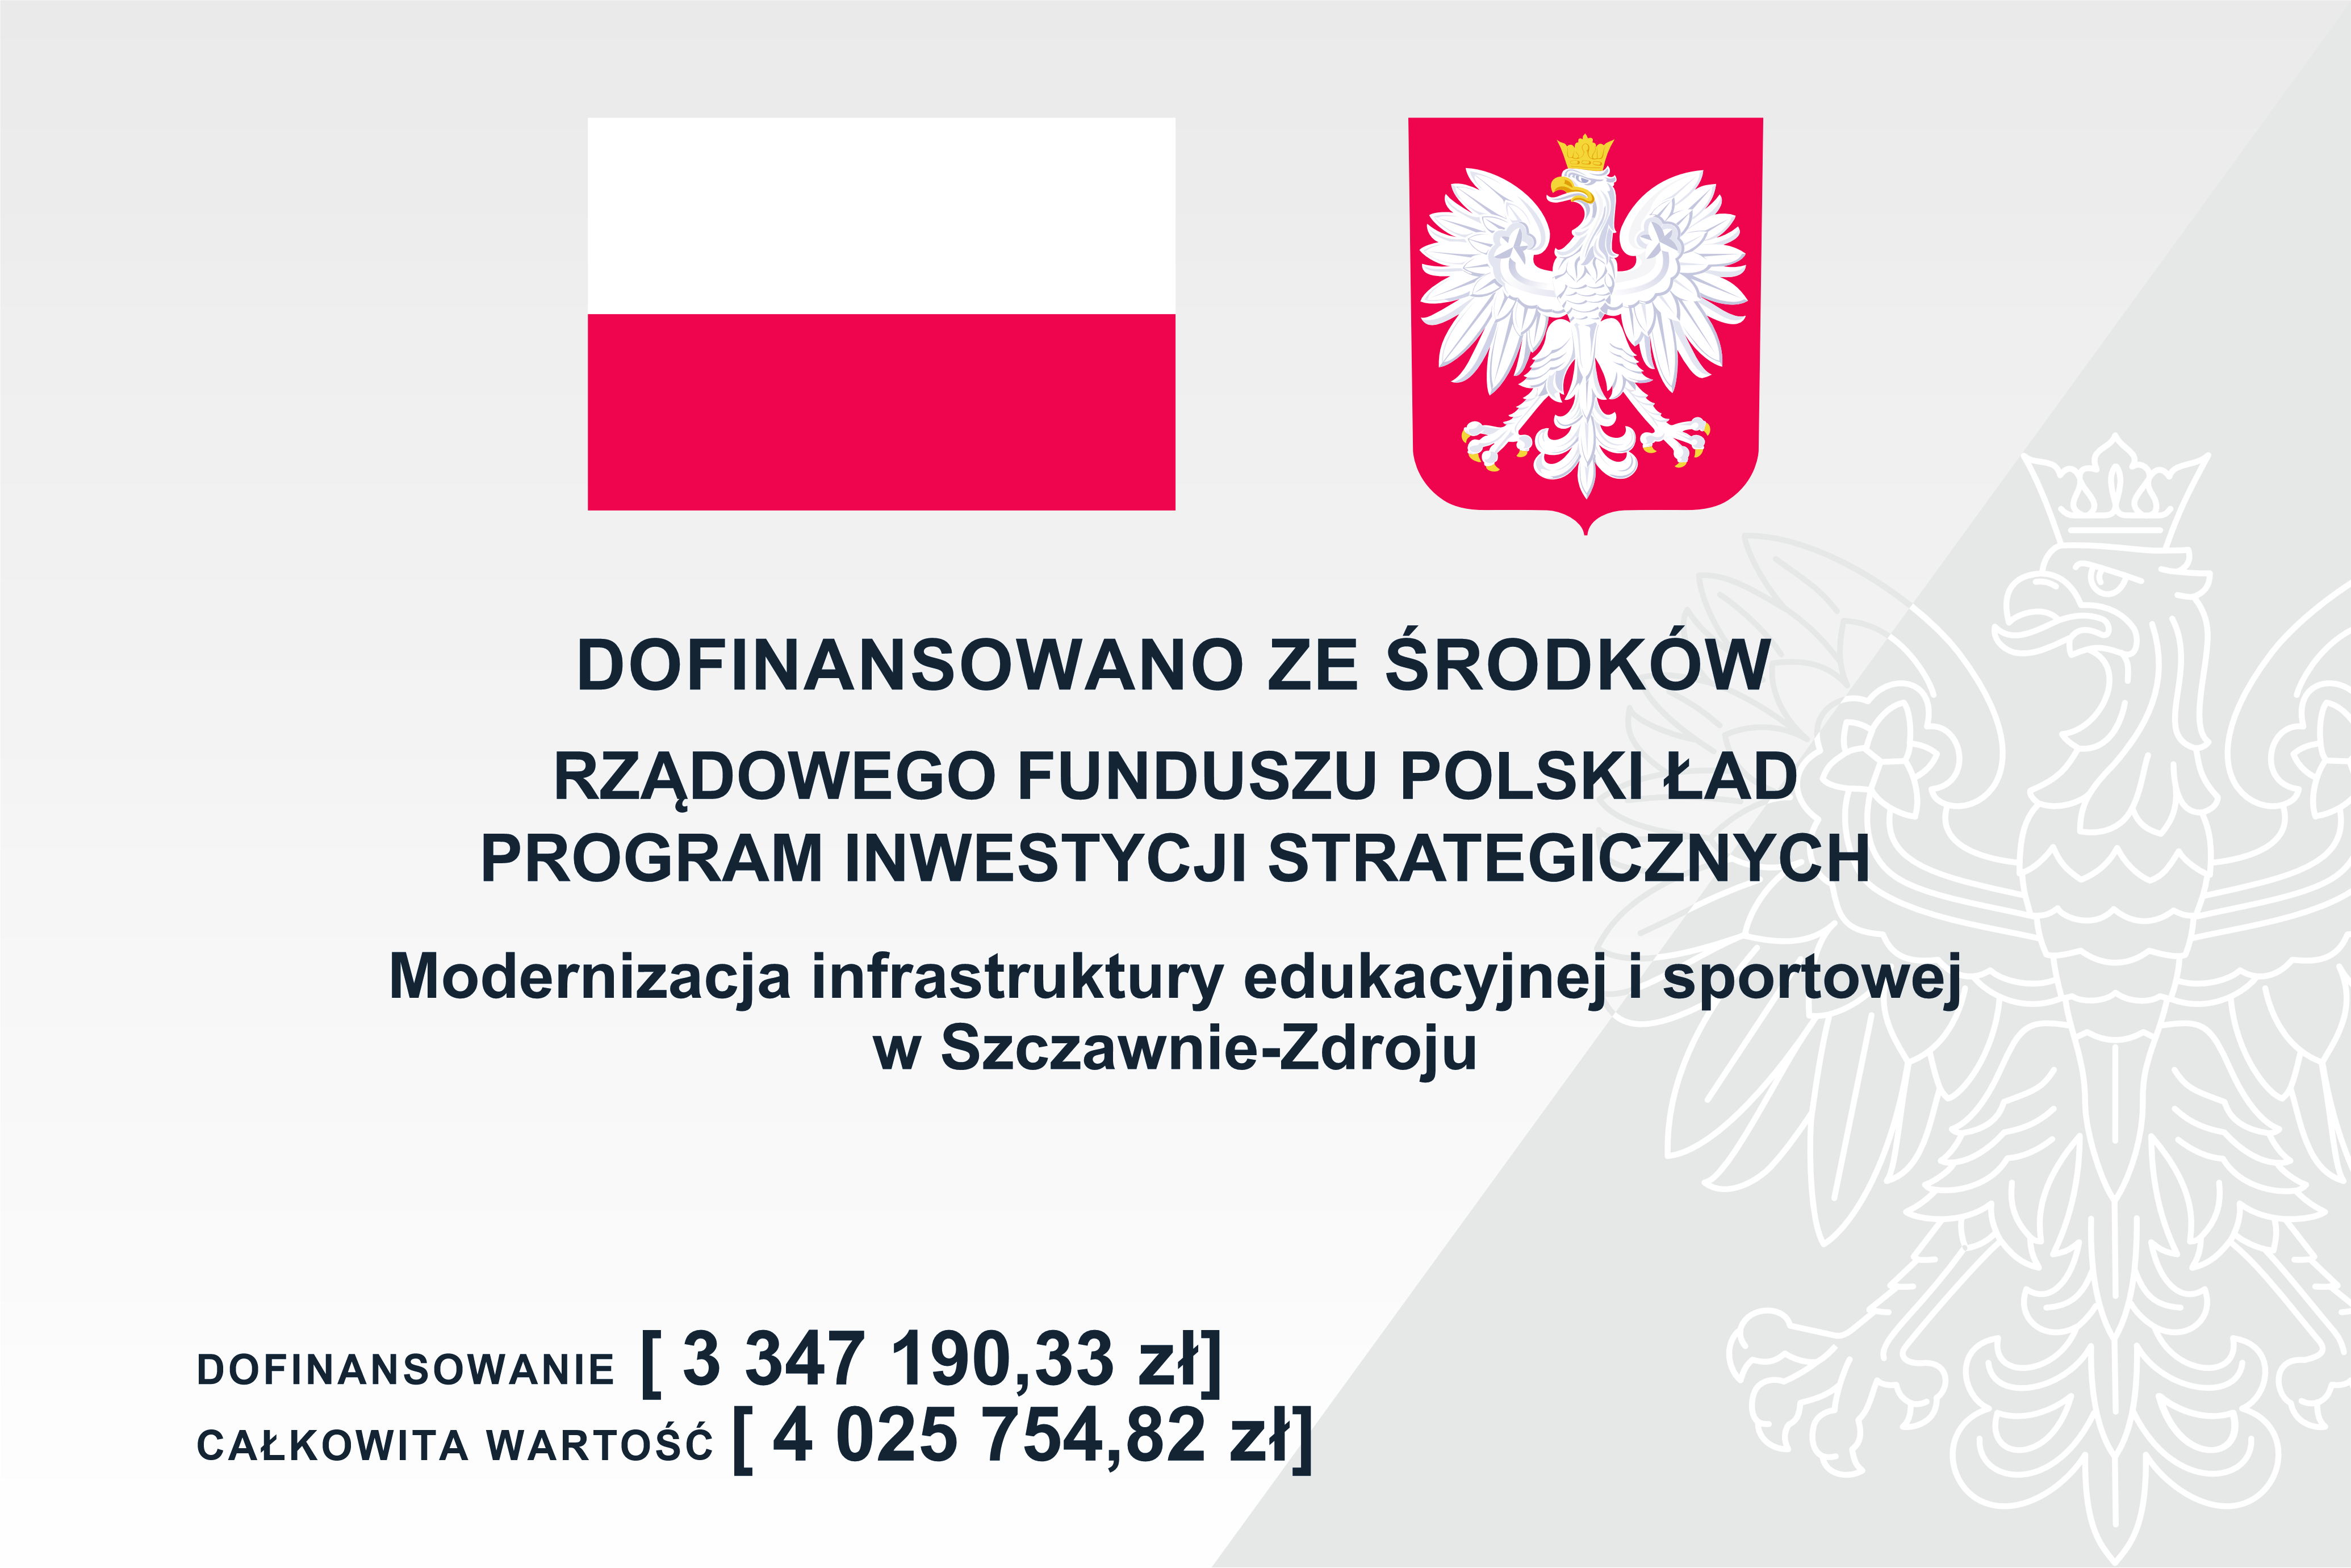 Dofinansowano ze środków rządowego funduszu polski ład